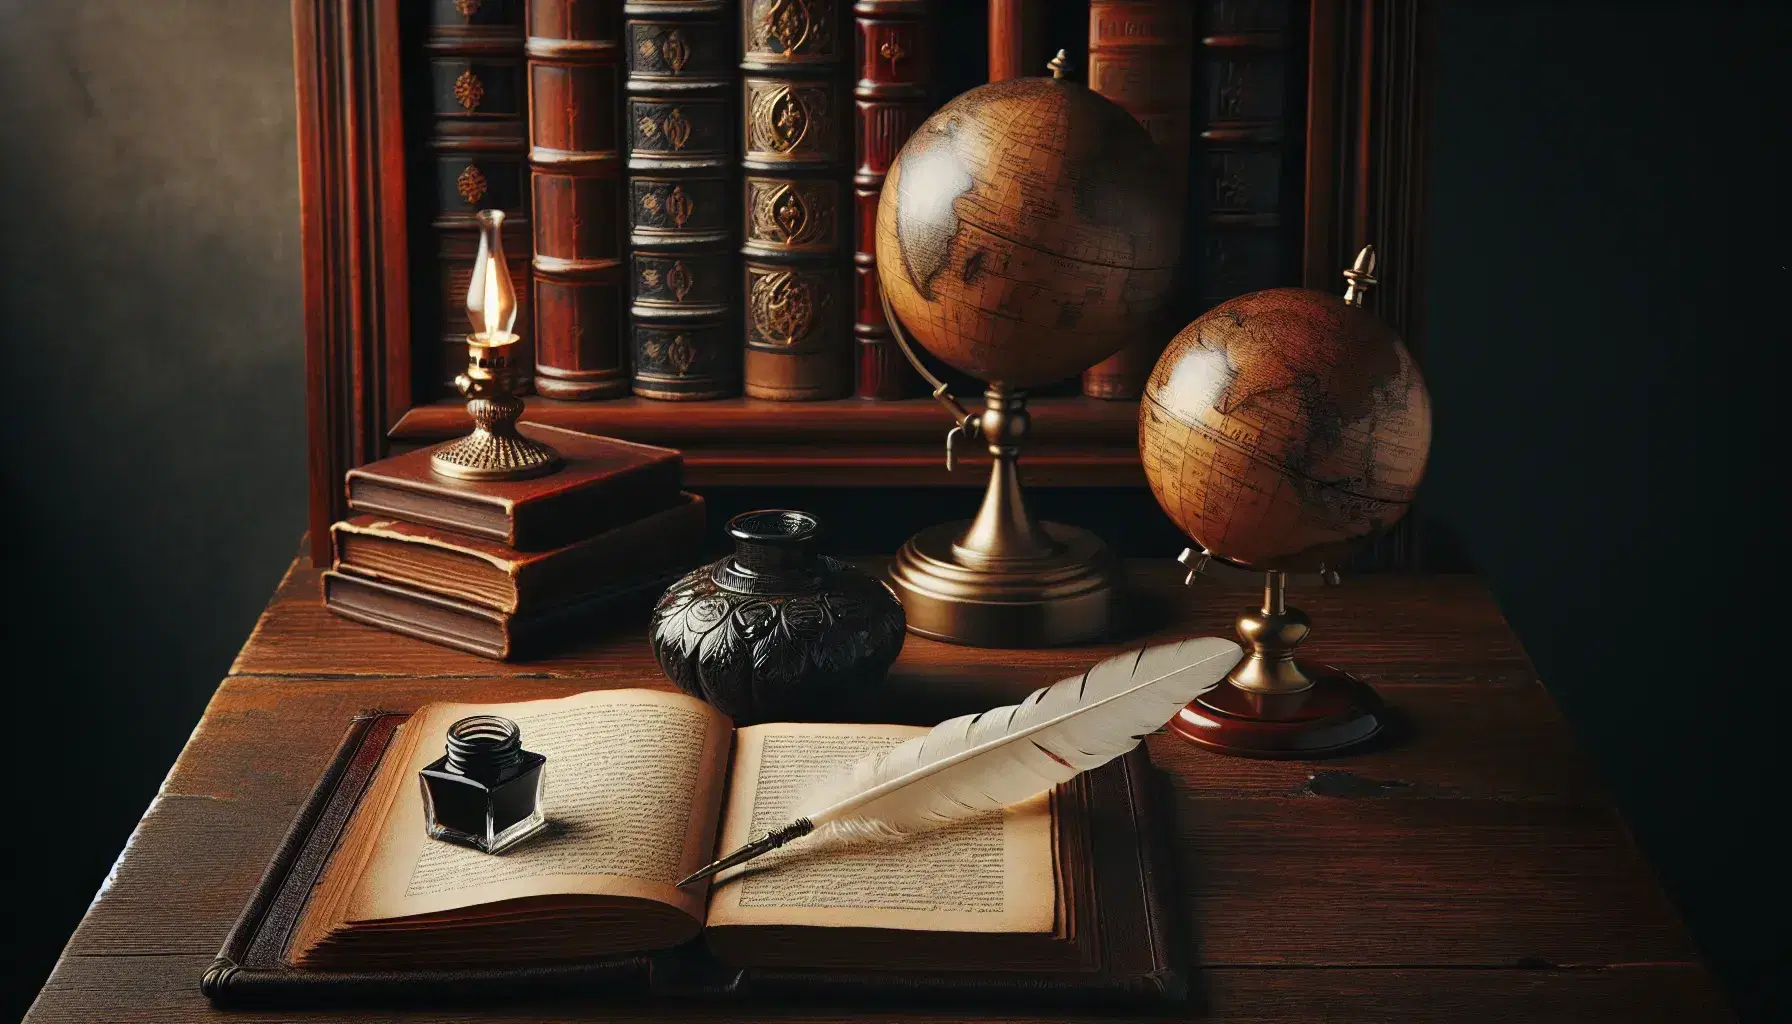 Scrivania antica in legno scuro con libro rilegato in pelle, calamaio in ceramica e piuma, globo e lampada a olio, sfondo di scaffali con libri.